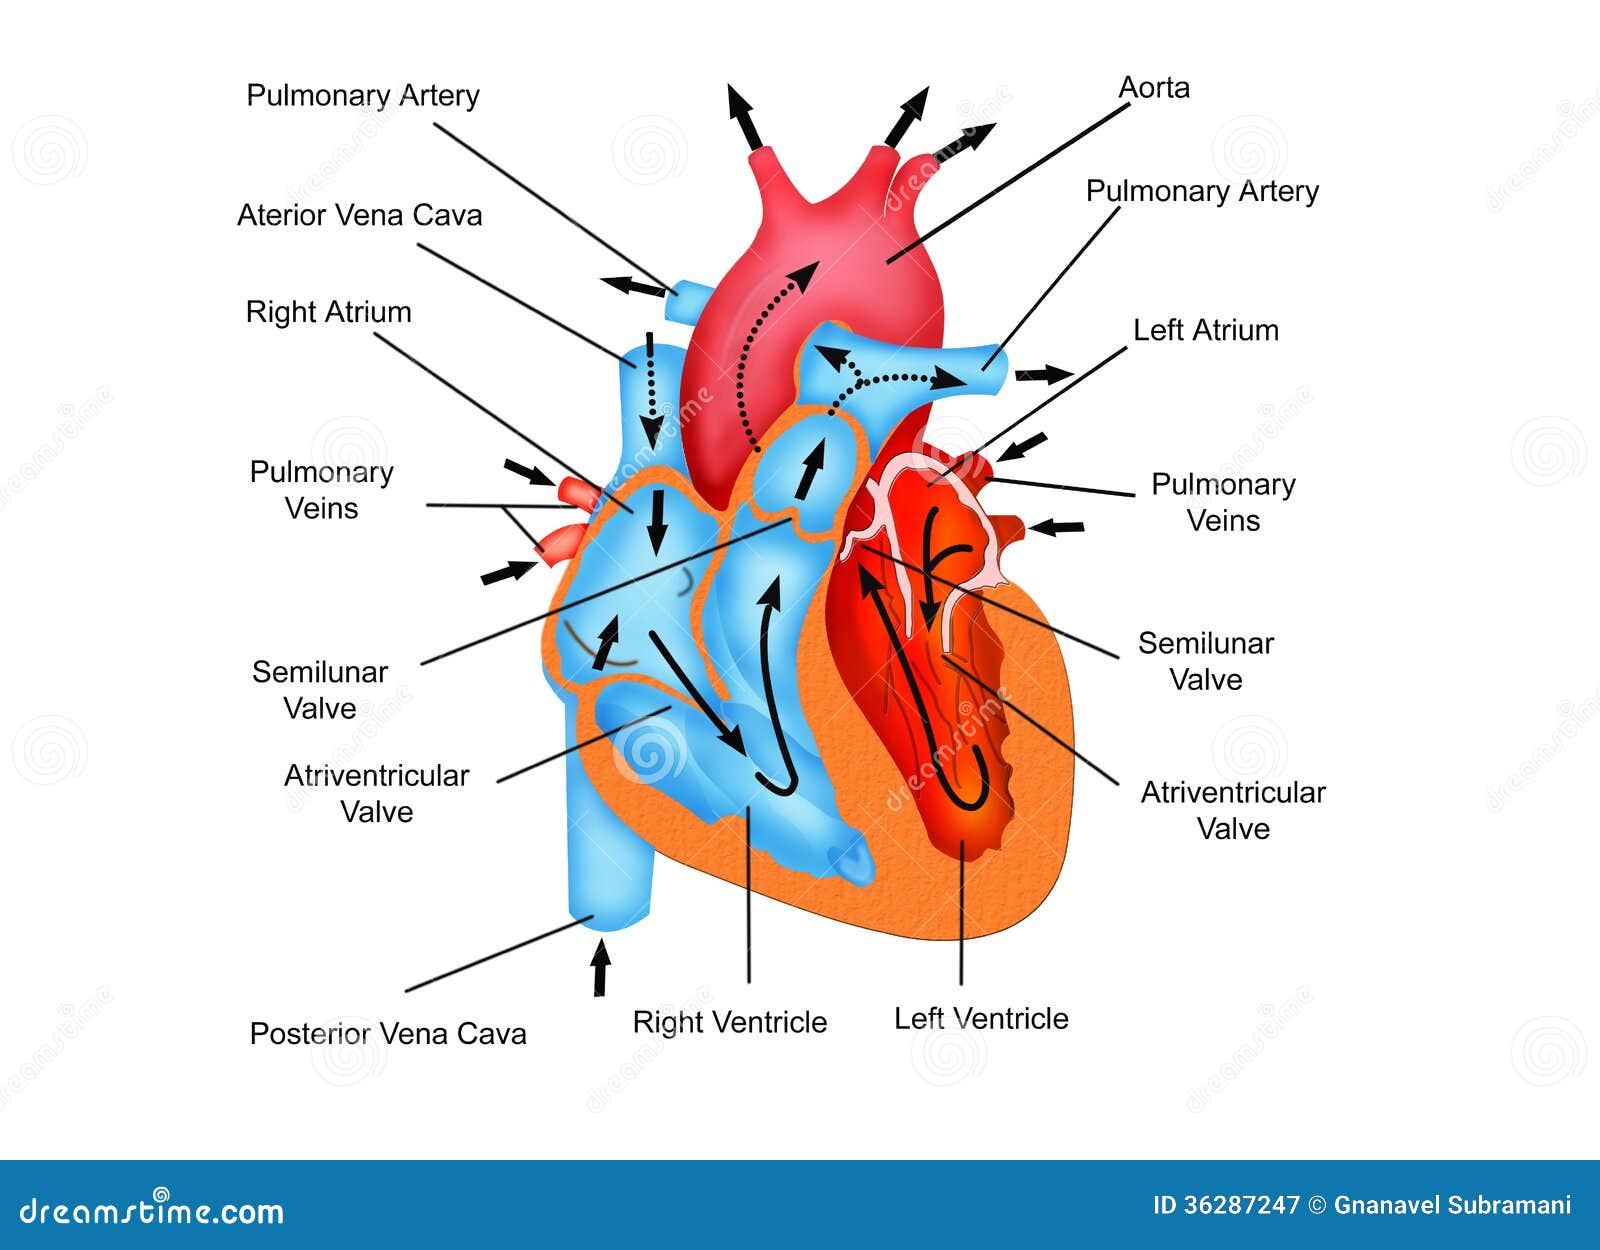 Human Heart Blood Flow Chart